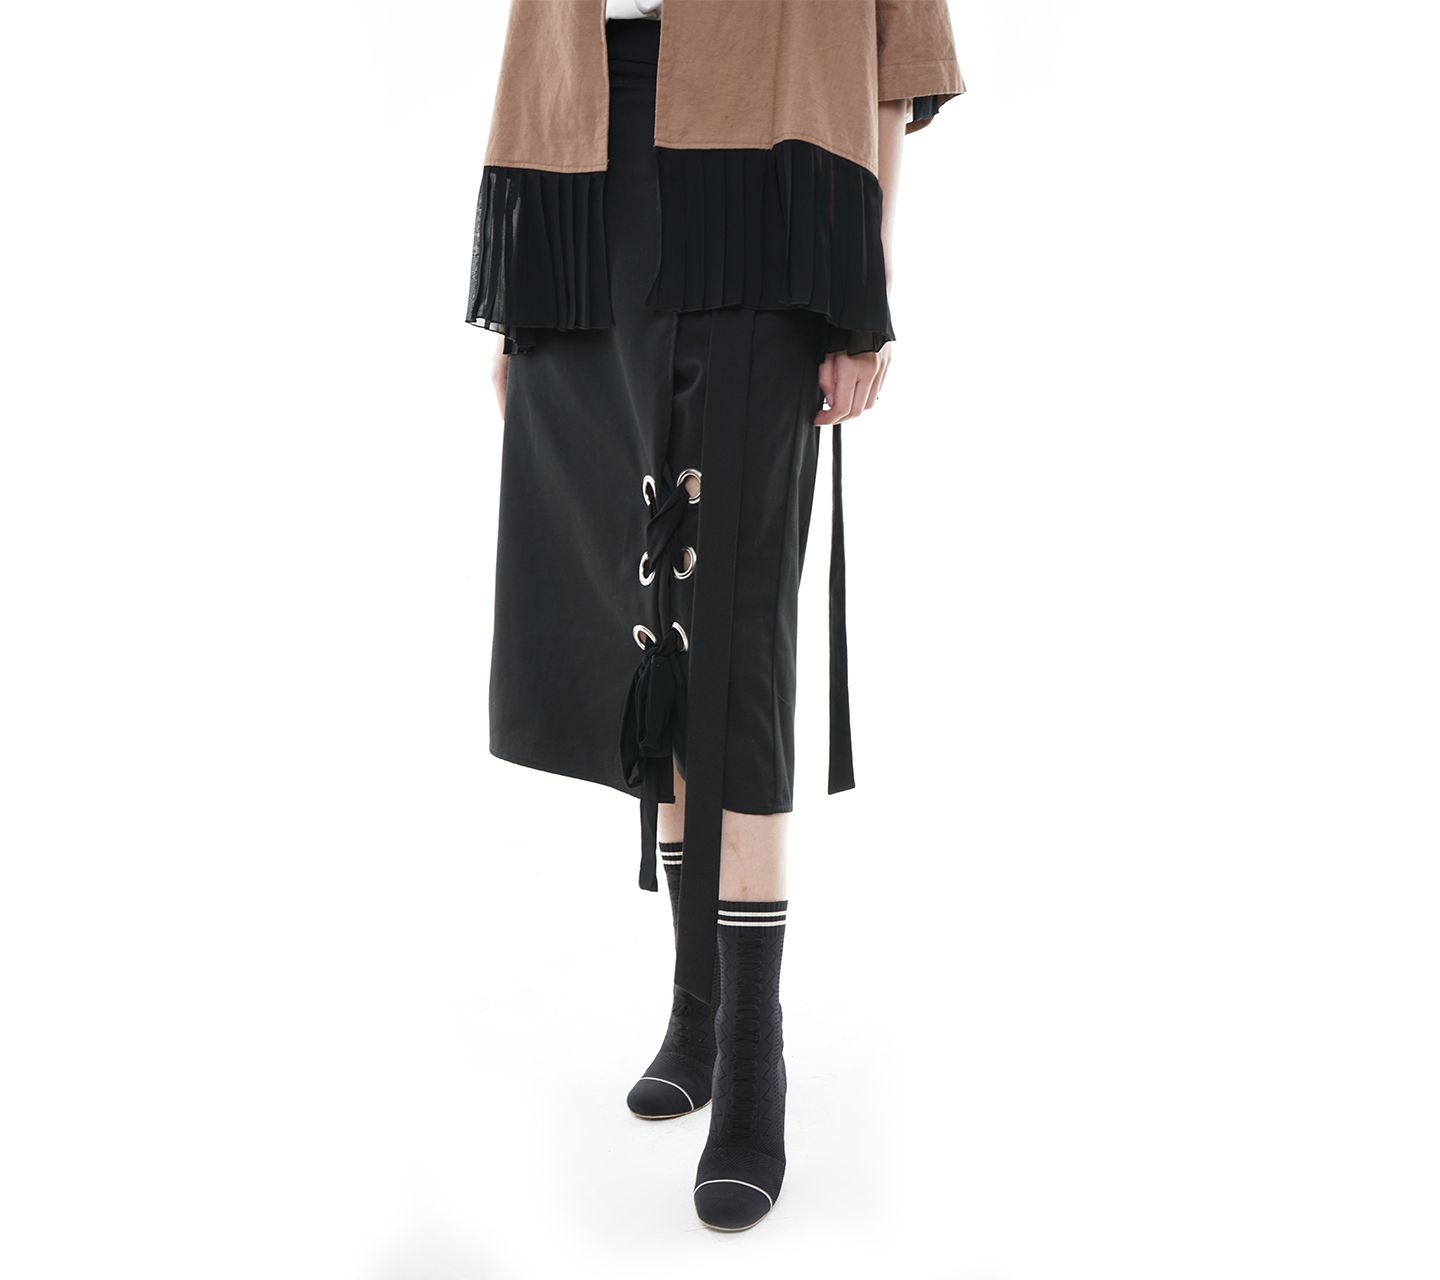 Jenahara Black Pencil with Eyelet Midi Skirt